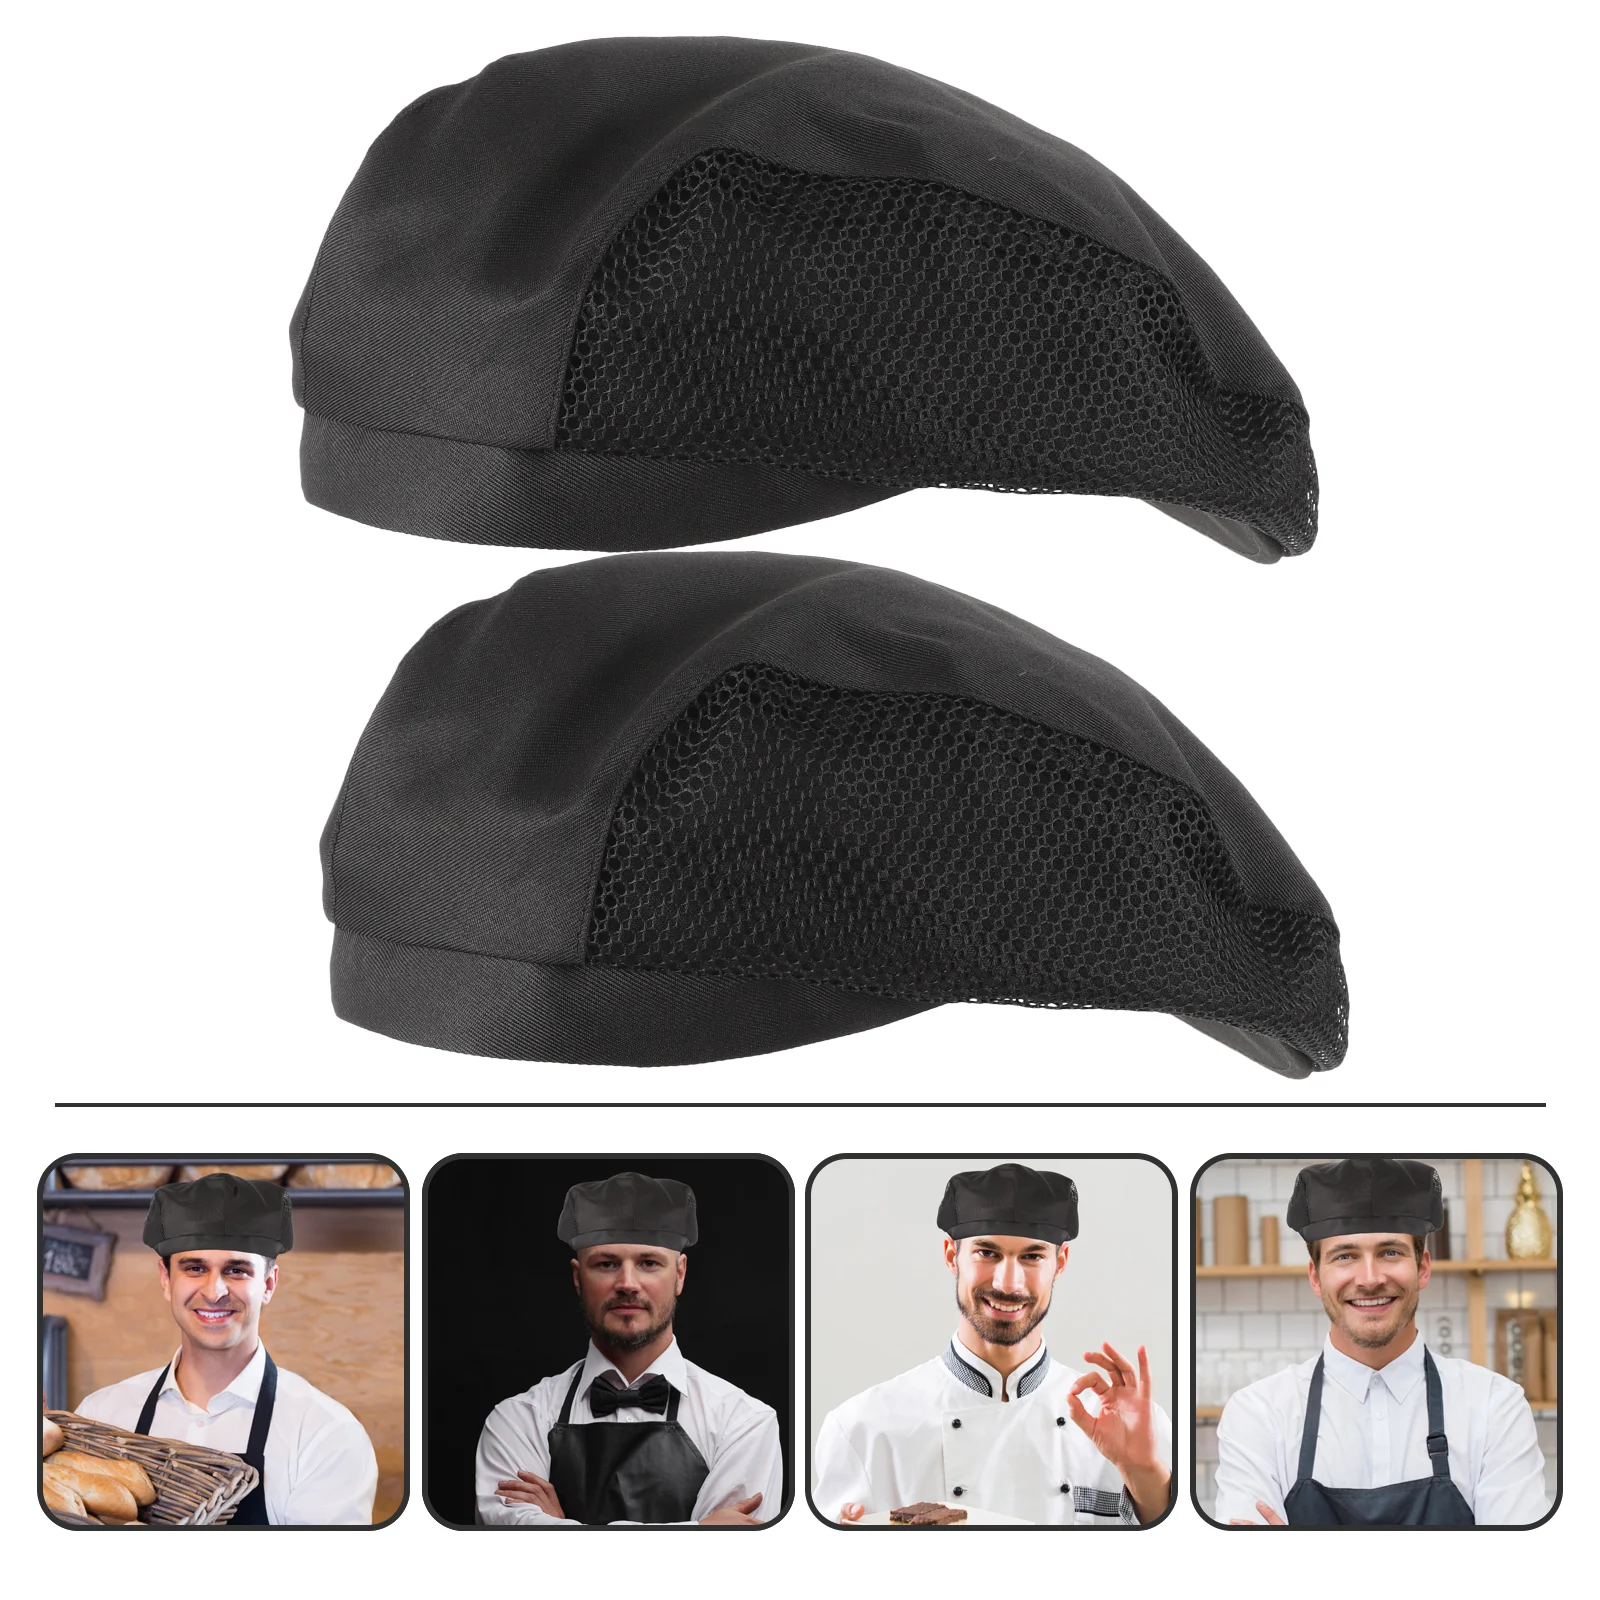 

2pcs Cook Hat Woman Man Worker Hat Reusable Washable Food Service Hair Net Cap